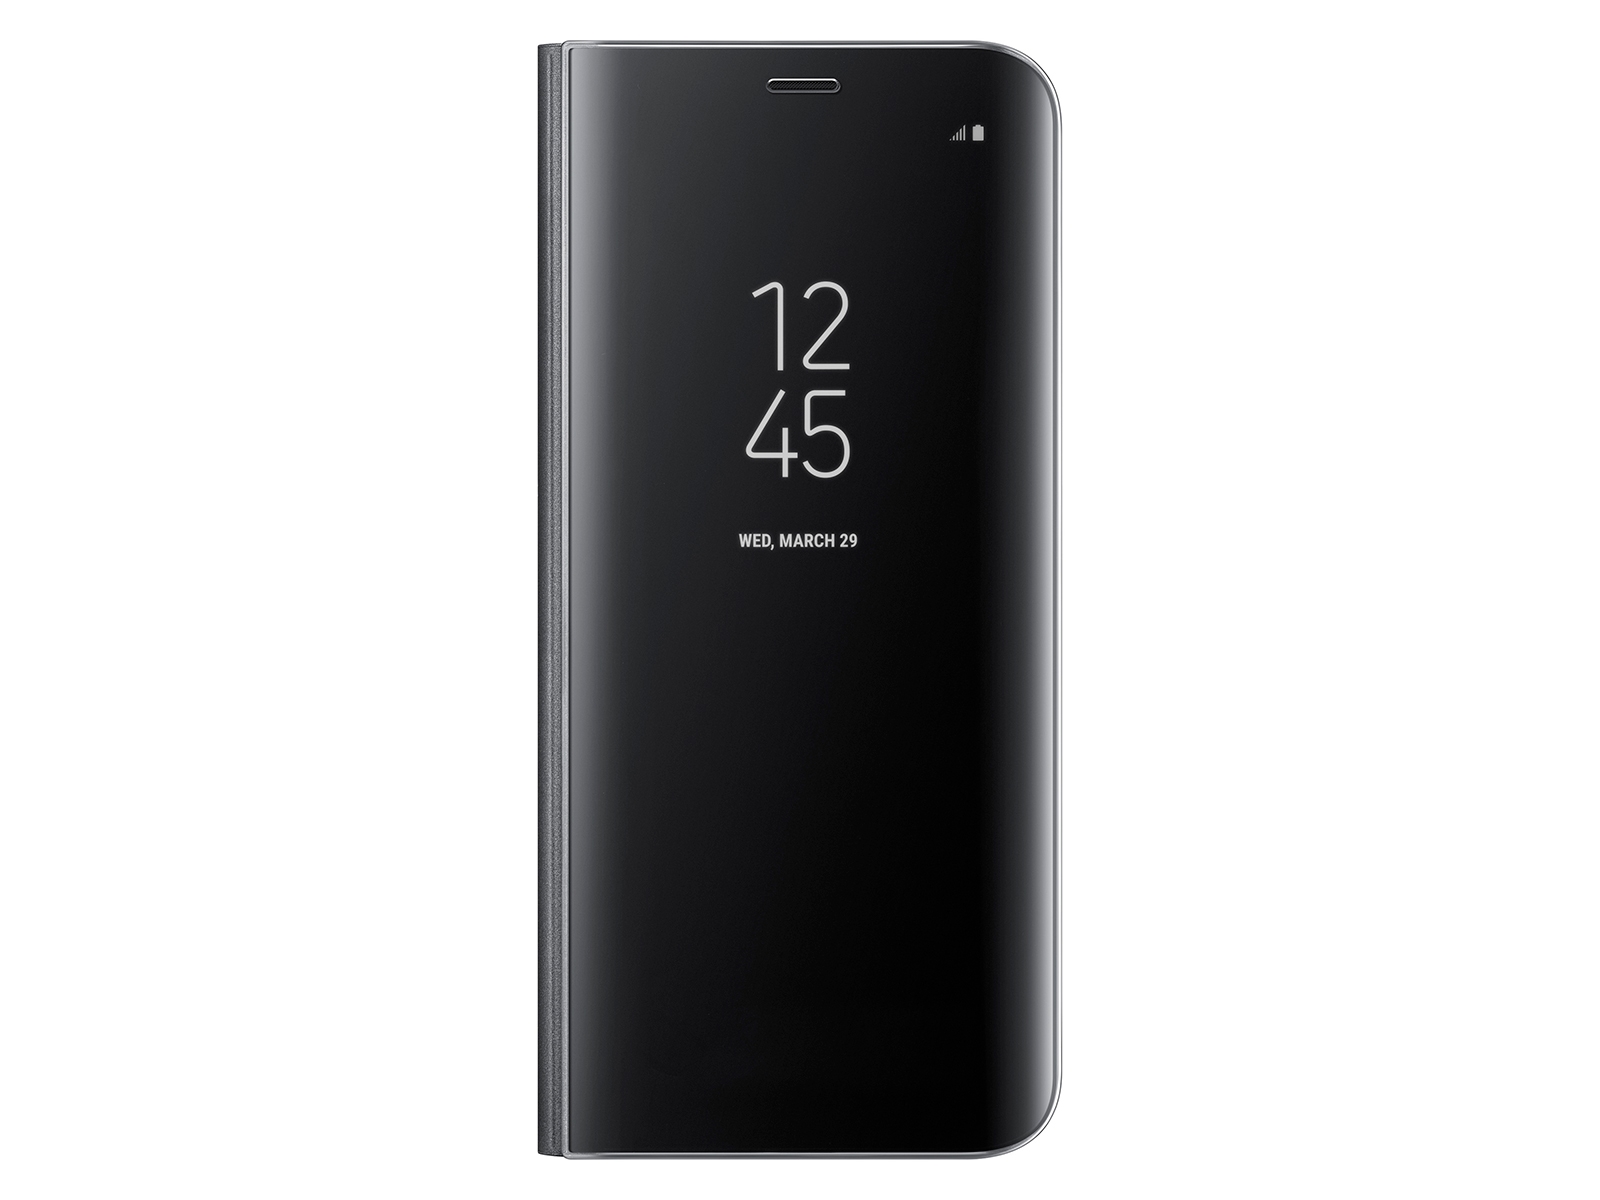 Reserveren herten renderen Galaxy S8 S-View Flip Cover, Black - EF-ZG950CBEGUS | Samsung US